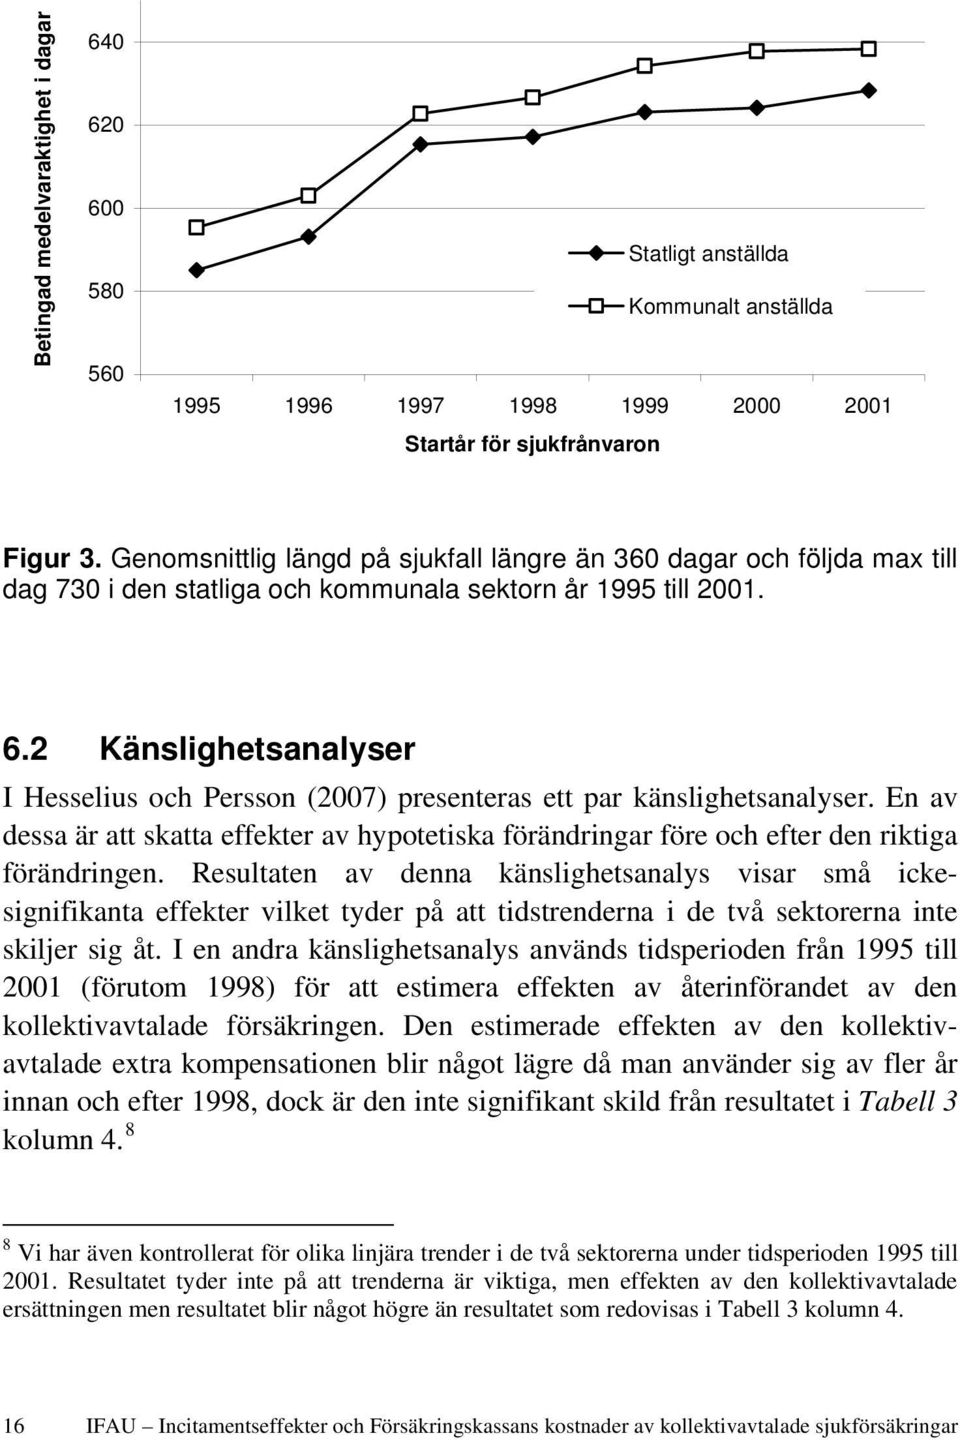 2 Känslighetsanalyser I Hesselius och Persson (2007) presenteras ett par känslighetsanalyser. En av dessa är att skatta effekter av hypotetiska förändringar före och efter den riktiga förändringen.